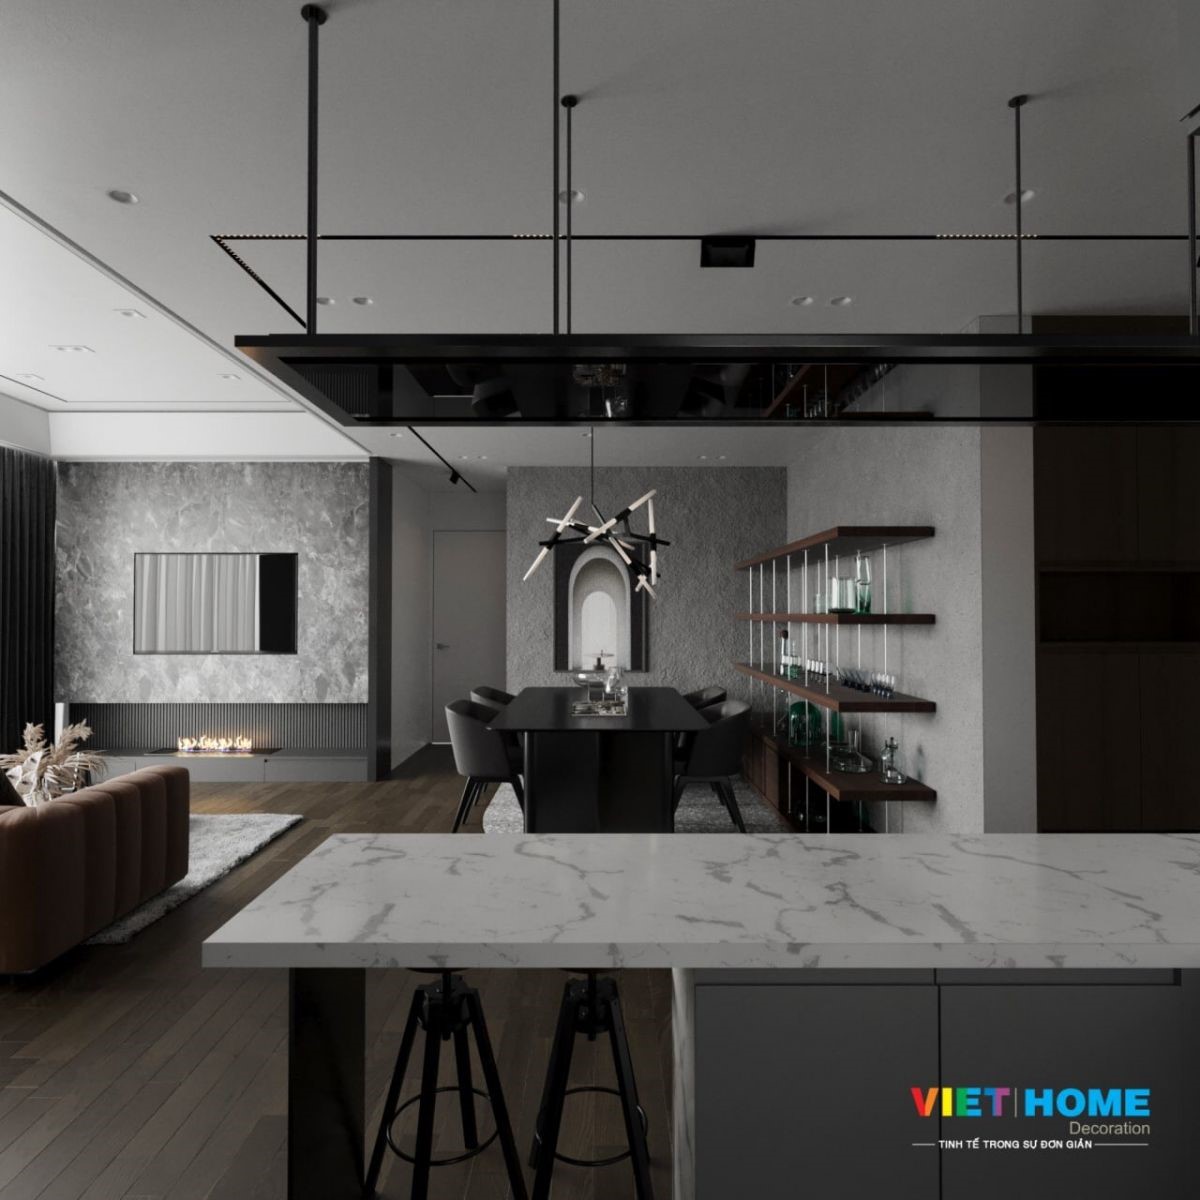 Thiết kế nội thất theo phog cách tối giản - minimalism style view 7